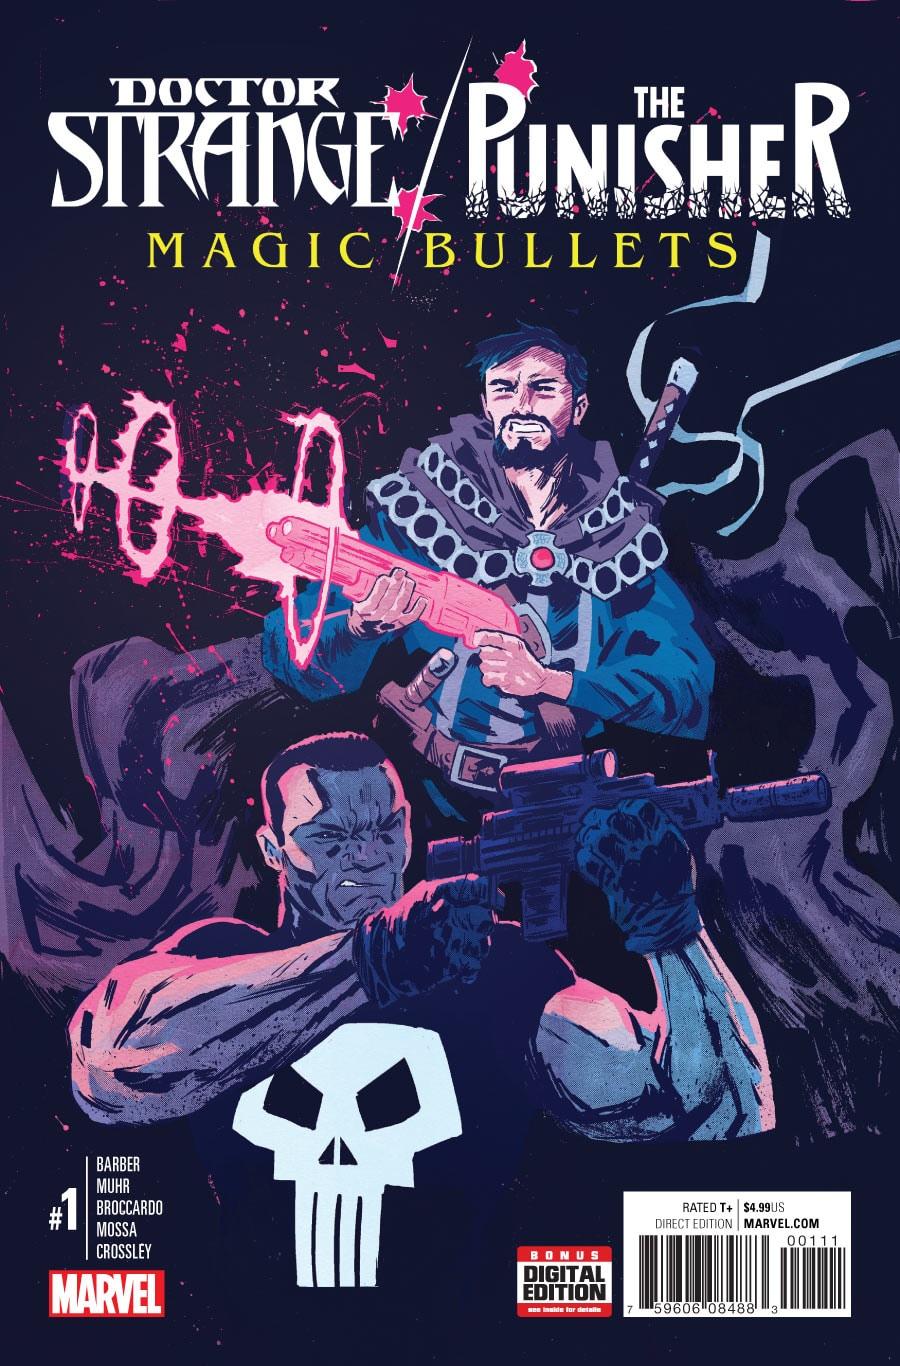 Doctor Strange / Punisher: Magic Bullets Vol. 1 #1